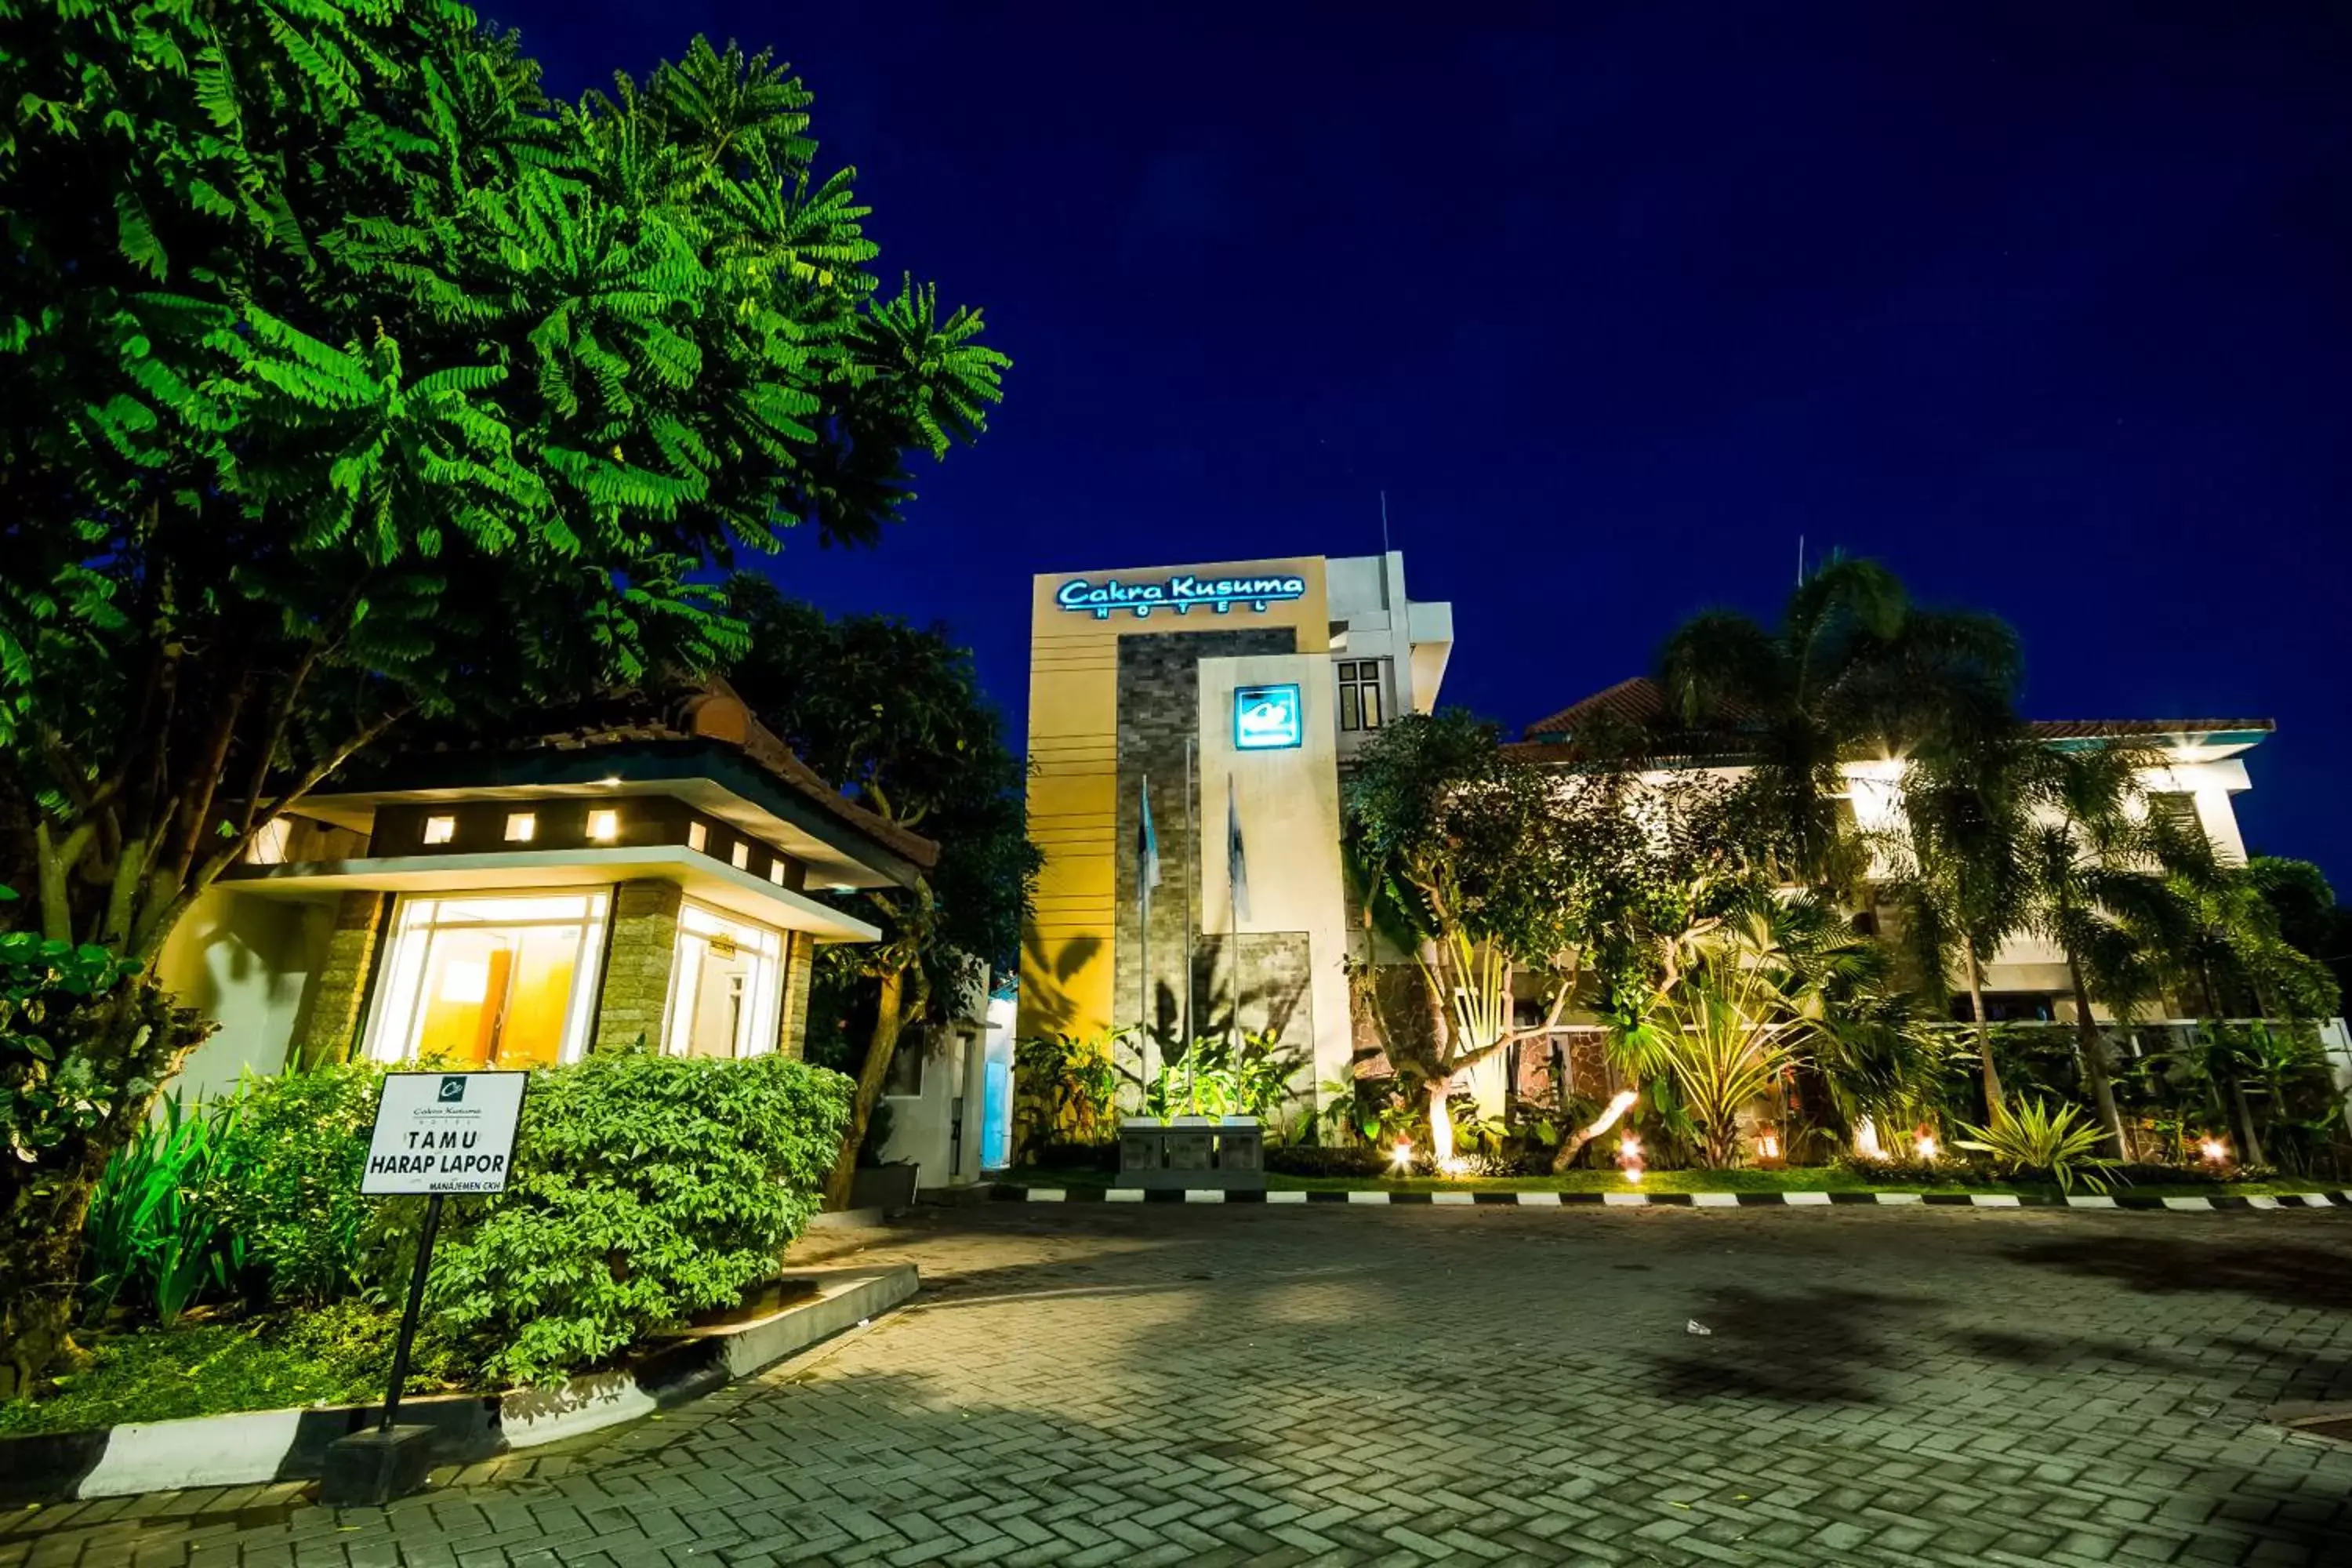 Night, Property Building in Cakra Kusuma Hotel